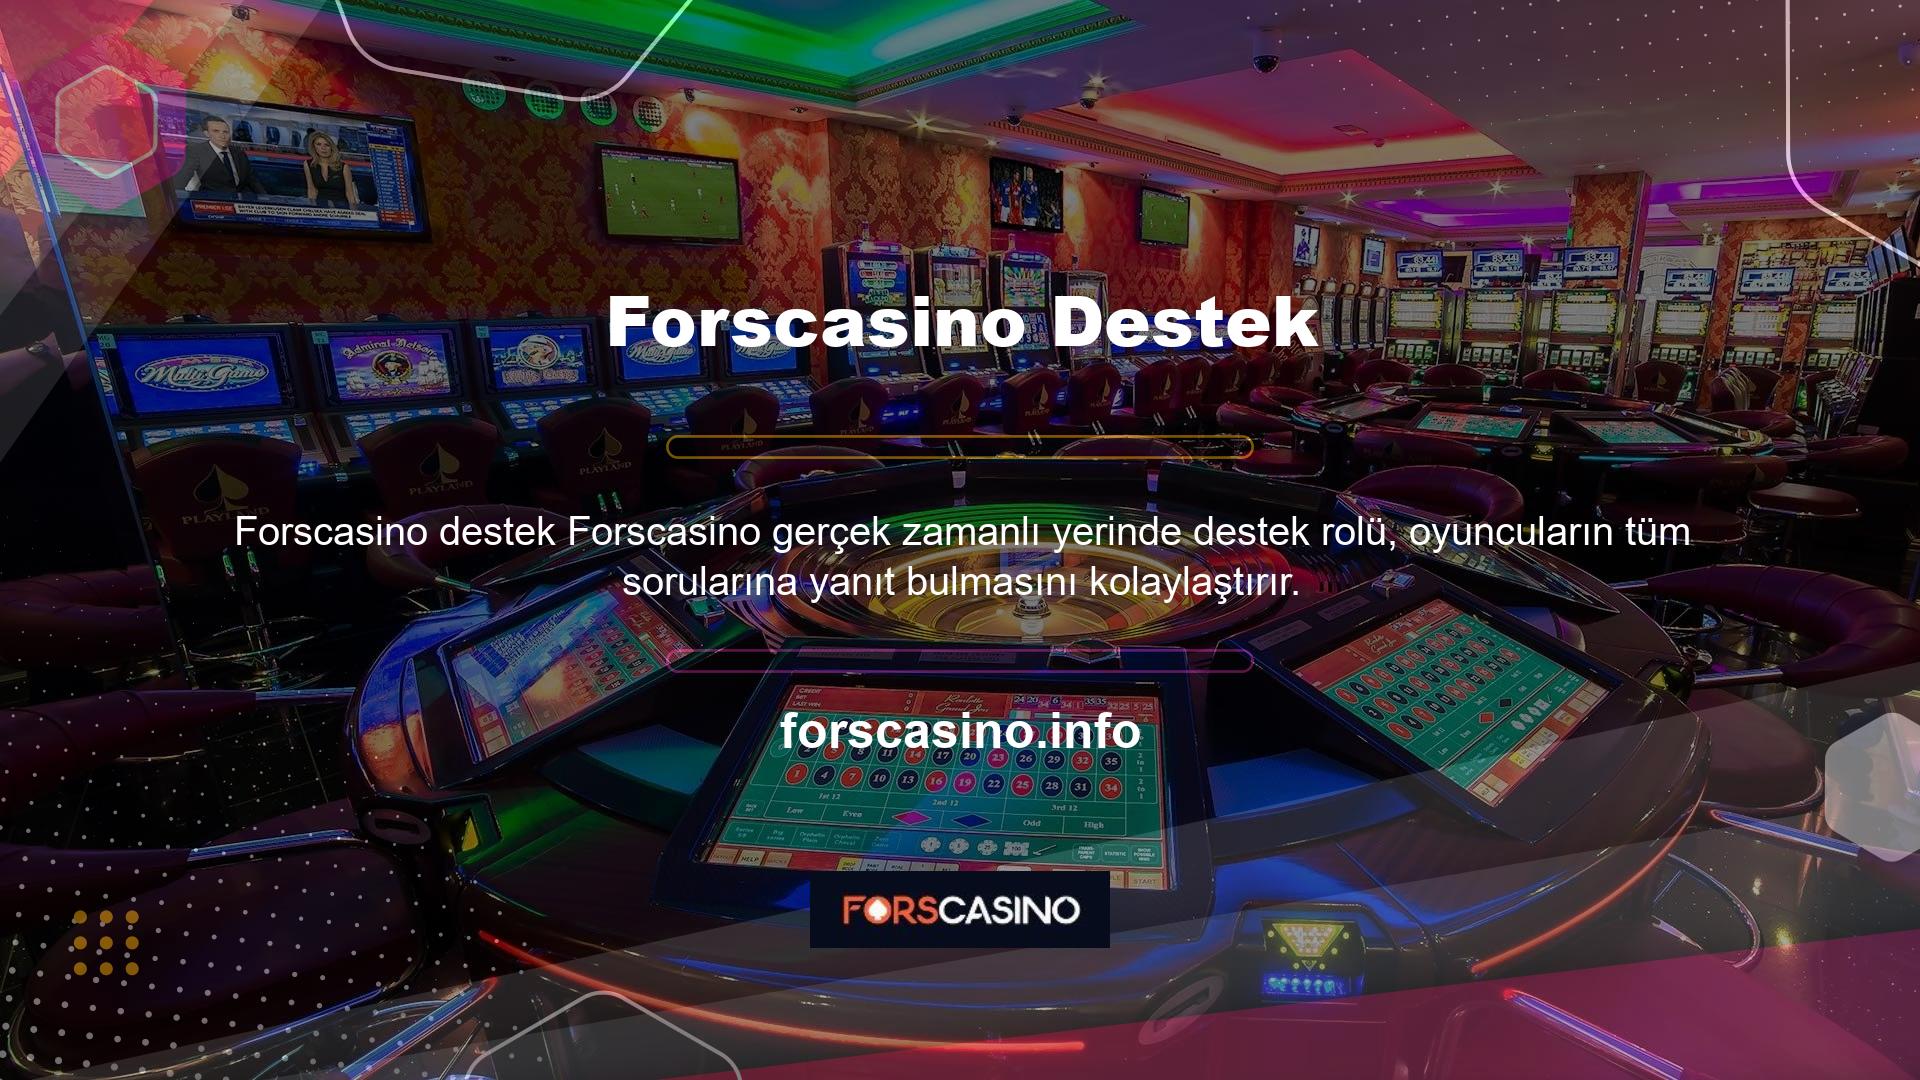 Forscasino desteği deneyimli saha ekibi tarafından 7/24 verilmektedir